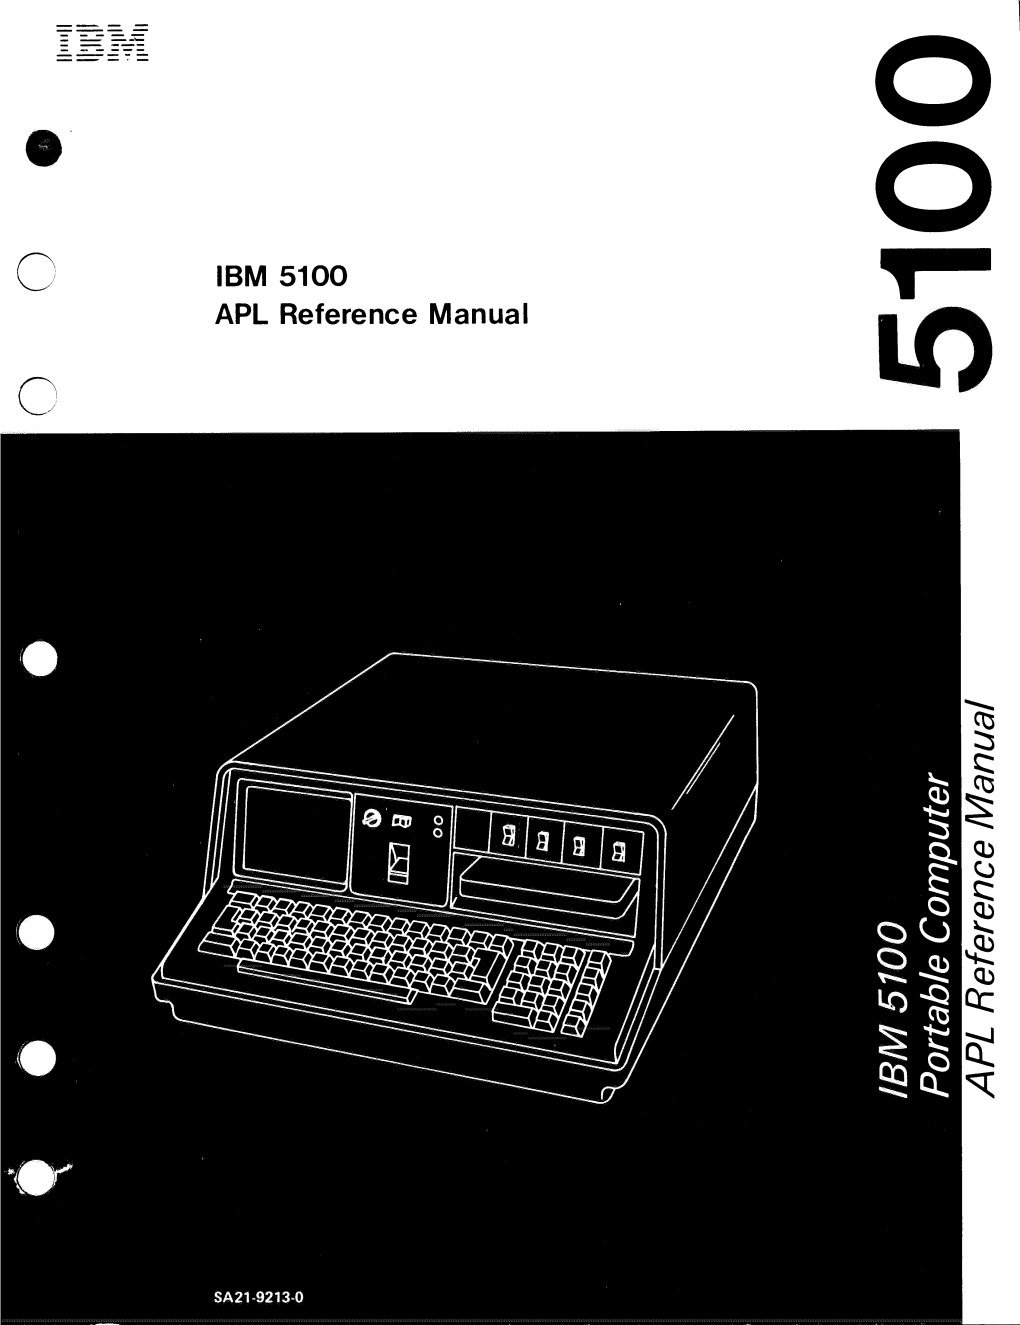 IBM 5100 APL Reference Manual